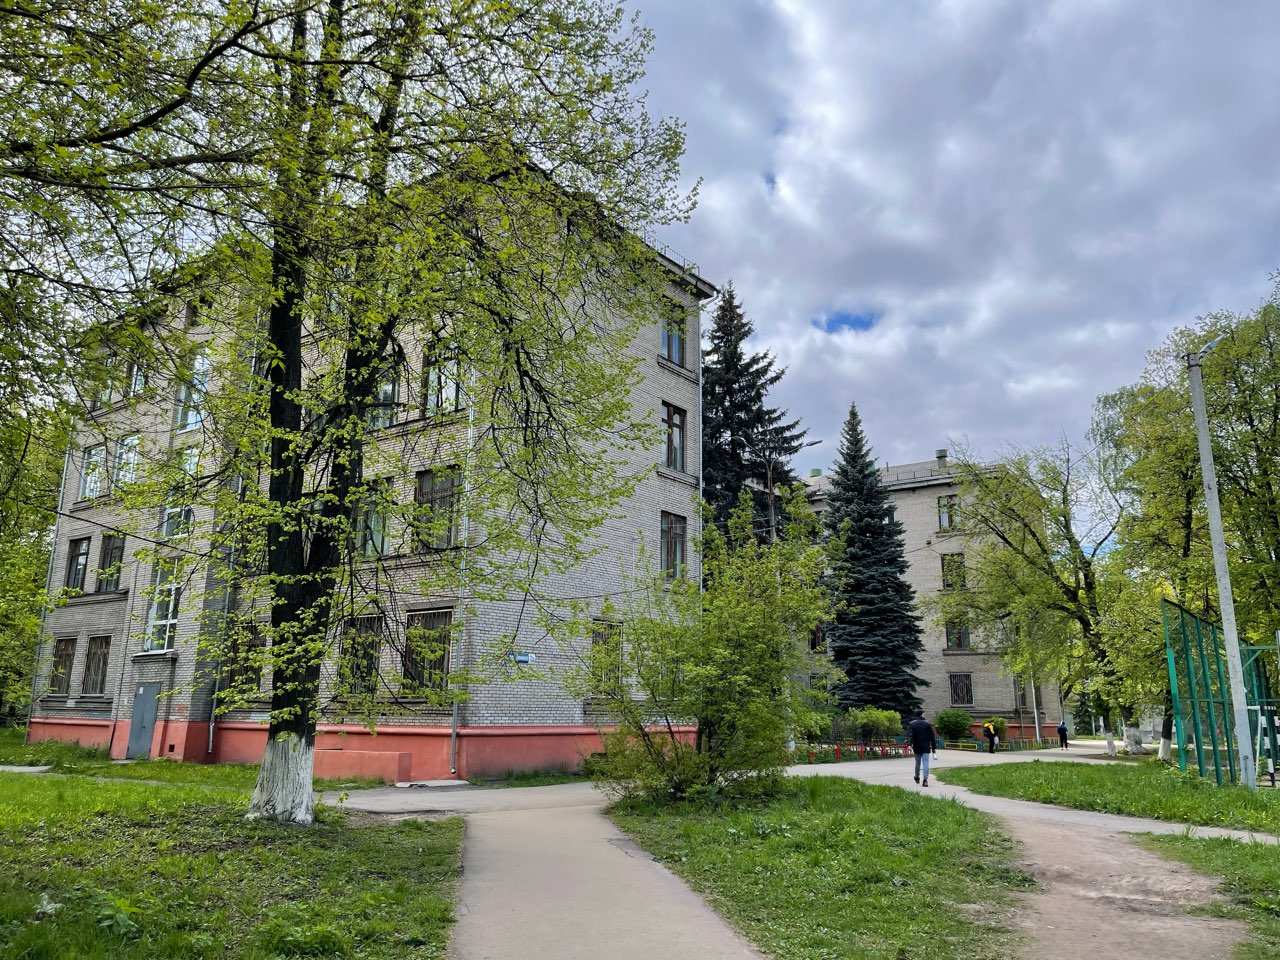 Около 20 школ эвакуировали в Нижнем Новгороде из-за писем о бомбе  - фото 1